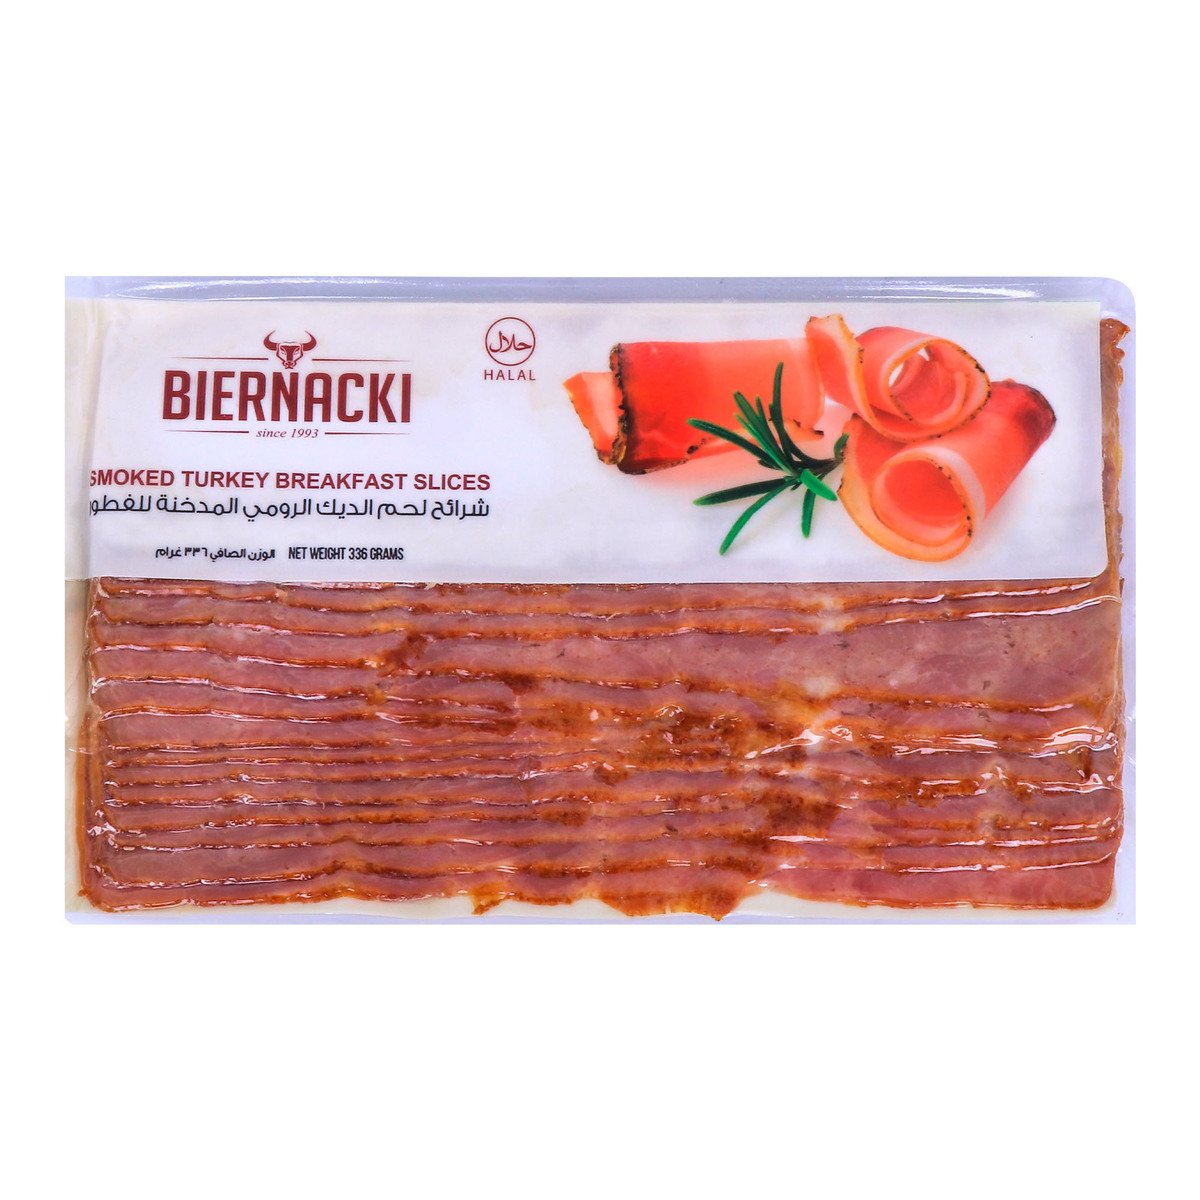 Biernacki Smoked Turkey Breakfast Slices 336g